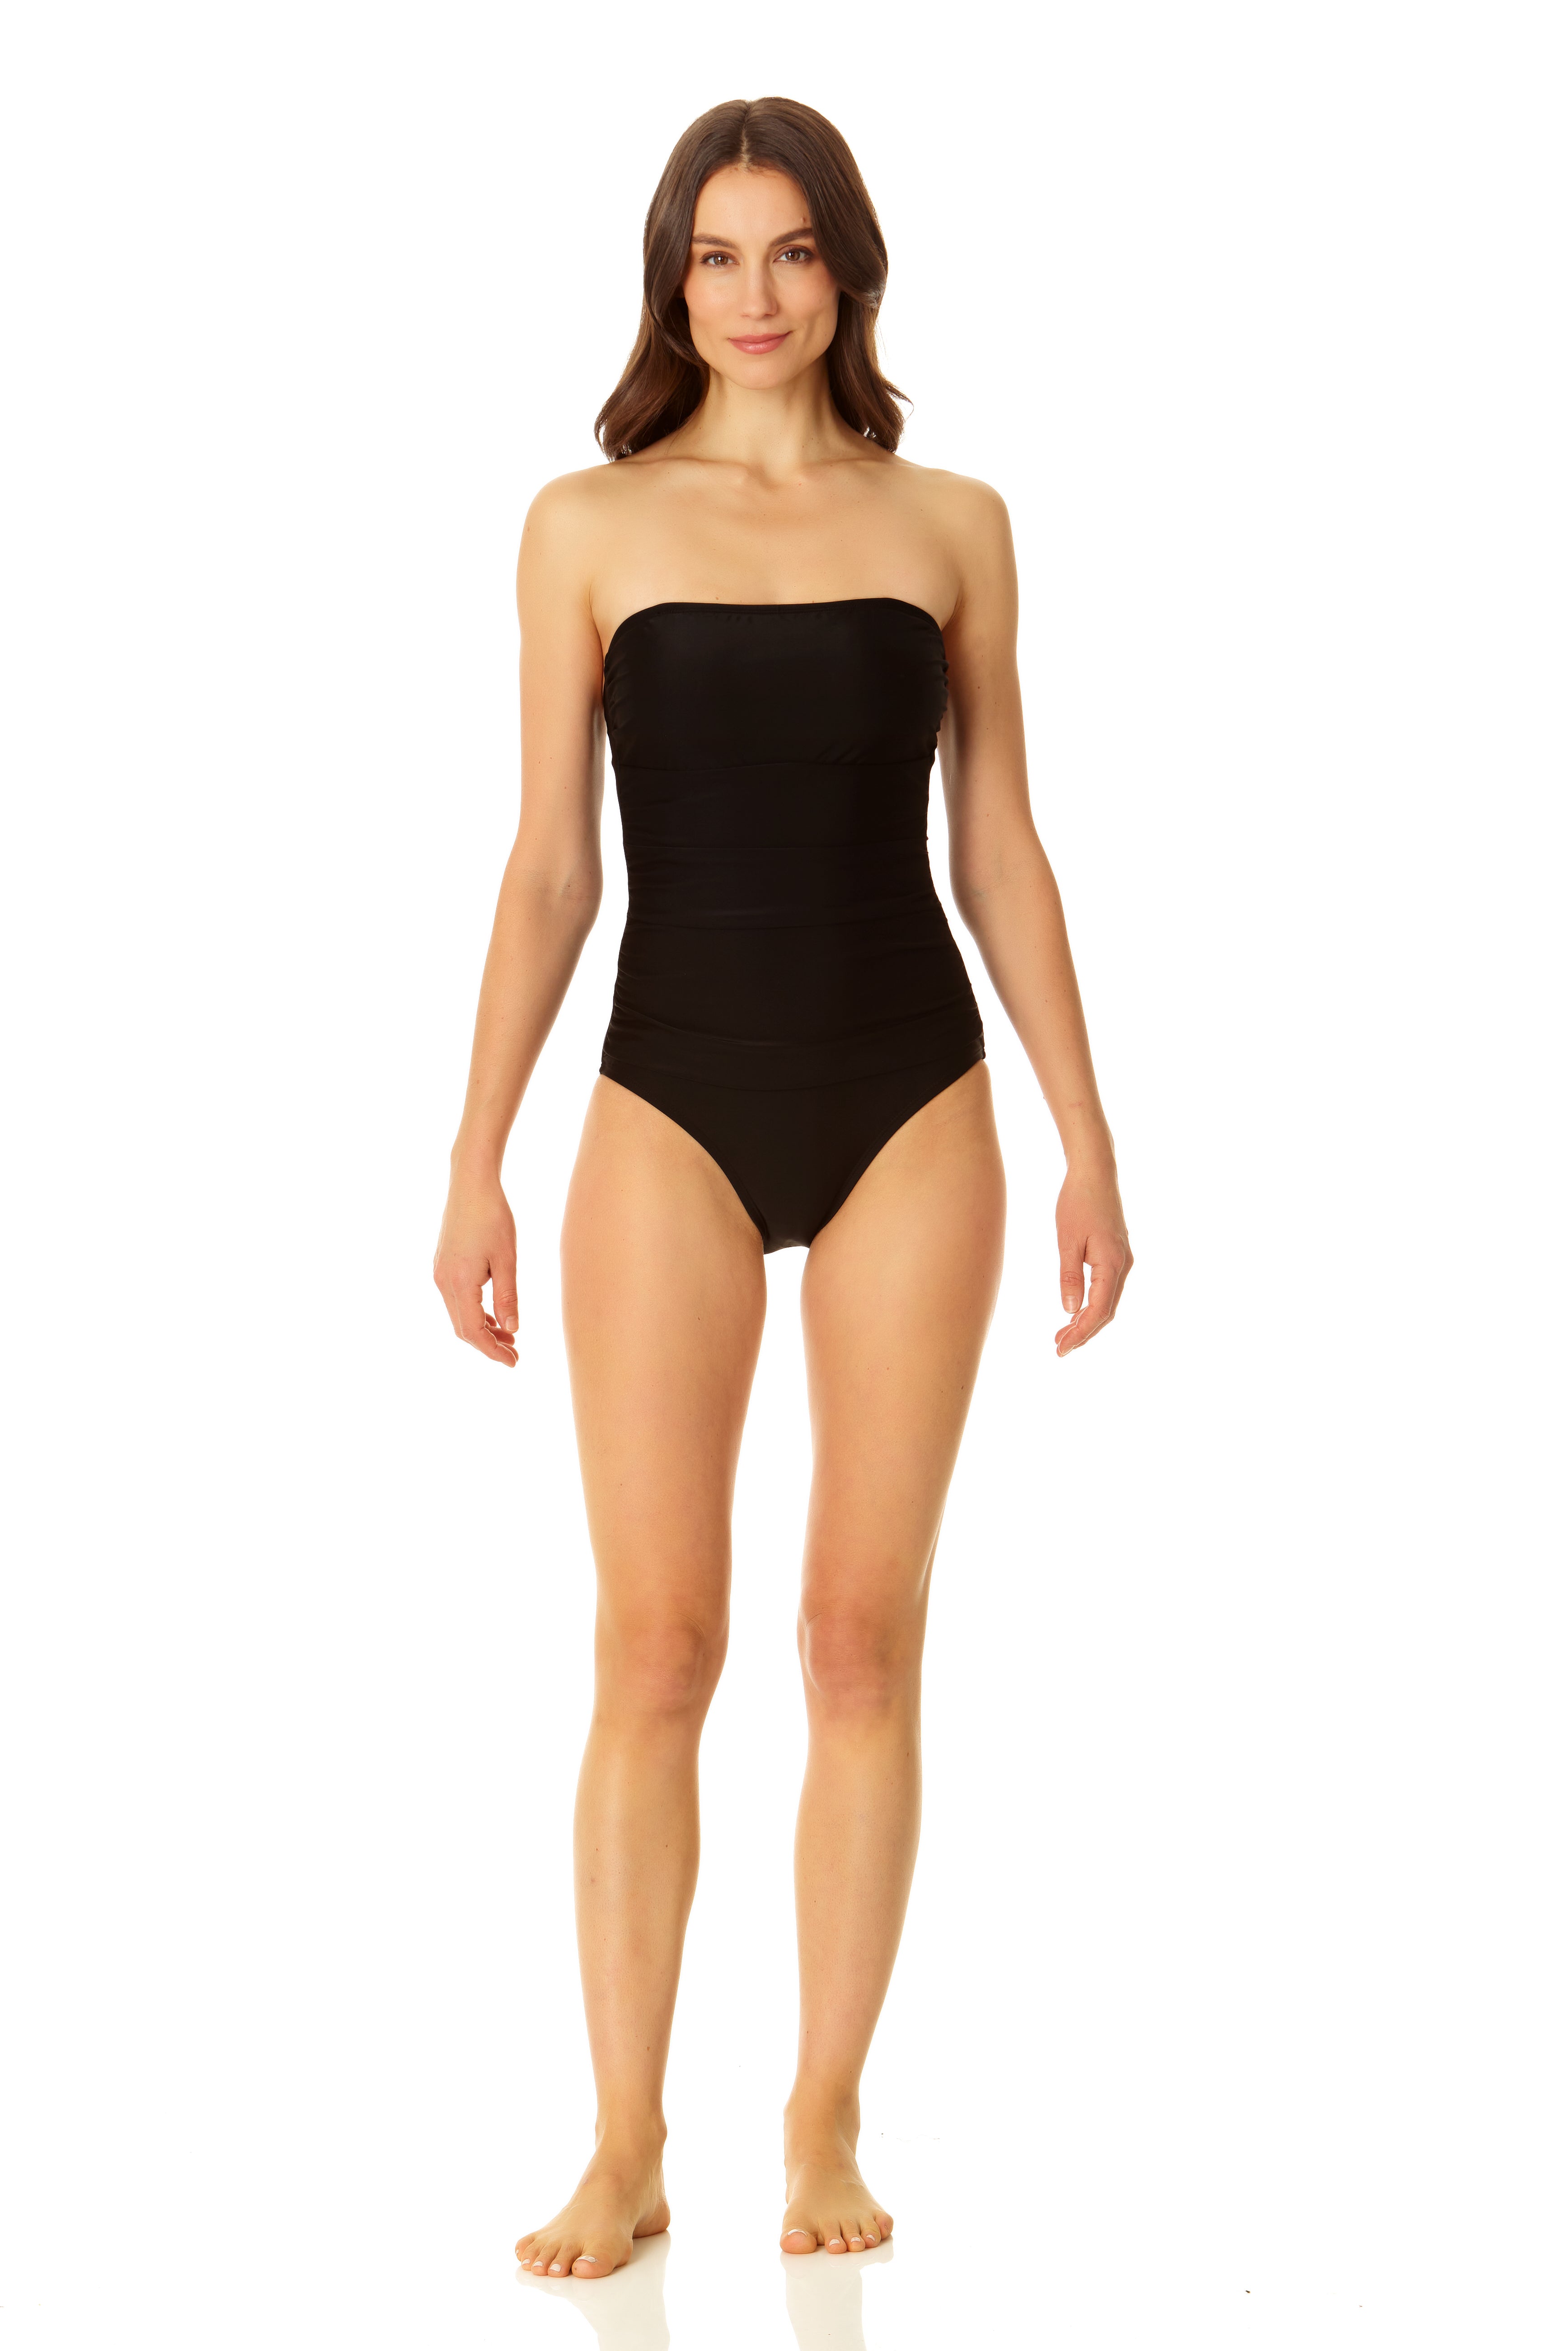 Coppersuit - Women's Tummy Control Bandeau One Piece Swimsuit